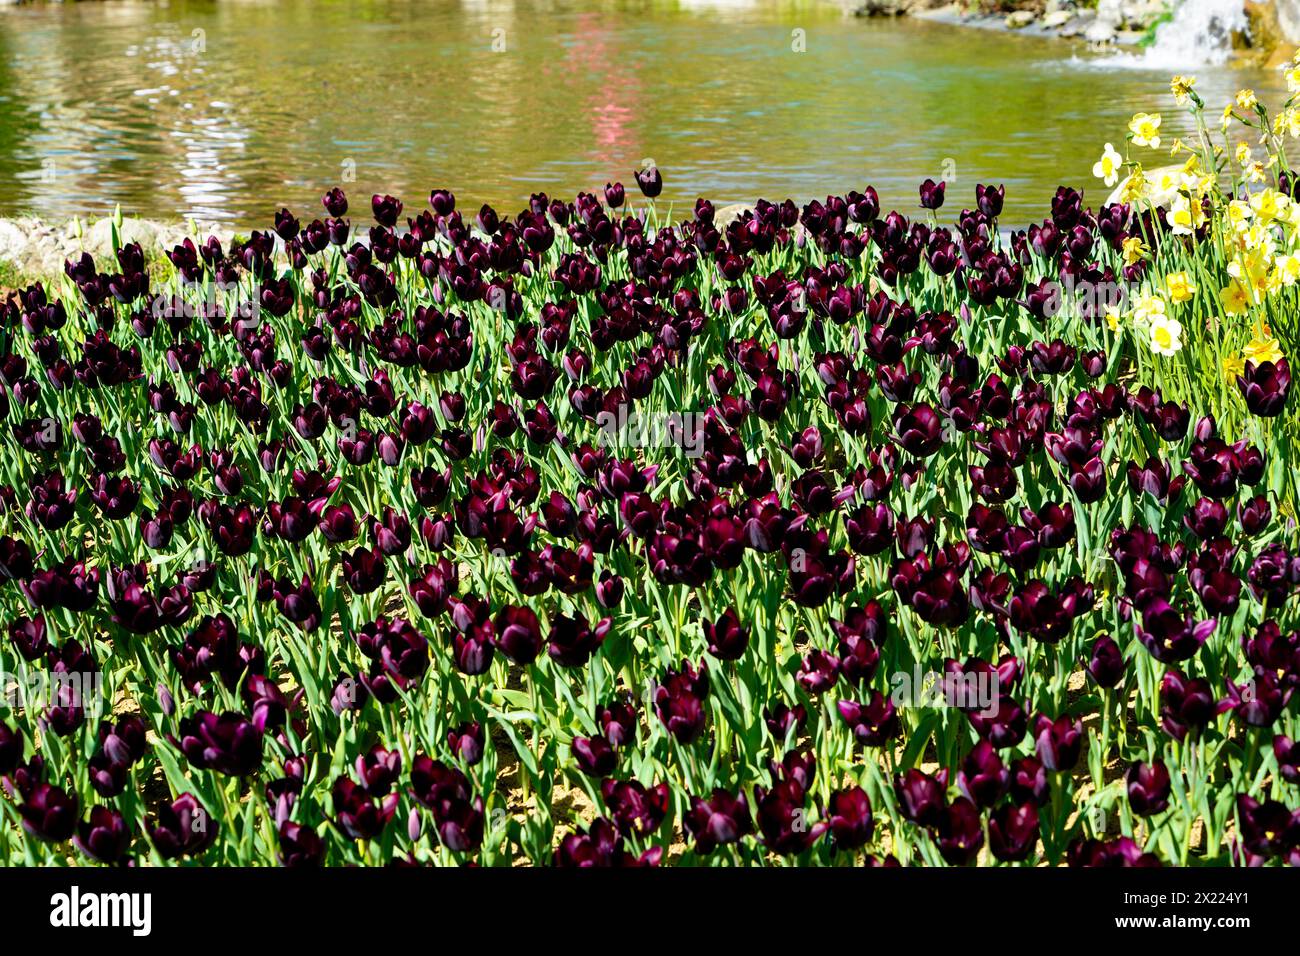 Fleur bulbeuse qui fleurit chaque année en avril, tulipes blanches violettes aux couleurs très vibrantes, Turquie Istanbul Emirgan bosquet au bord du lac Banque D'Images